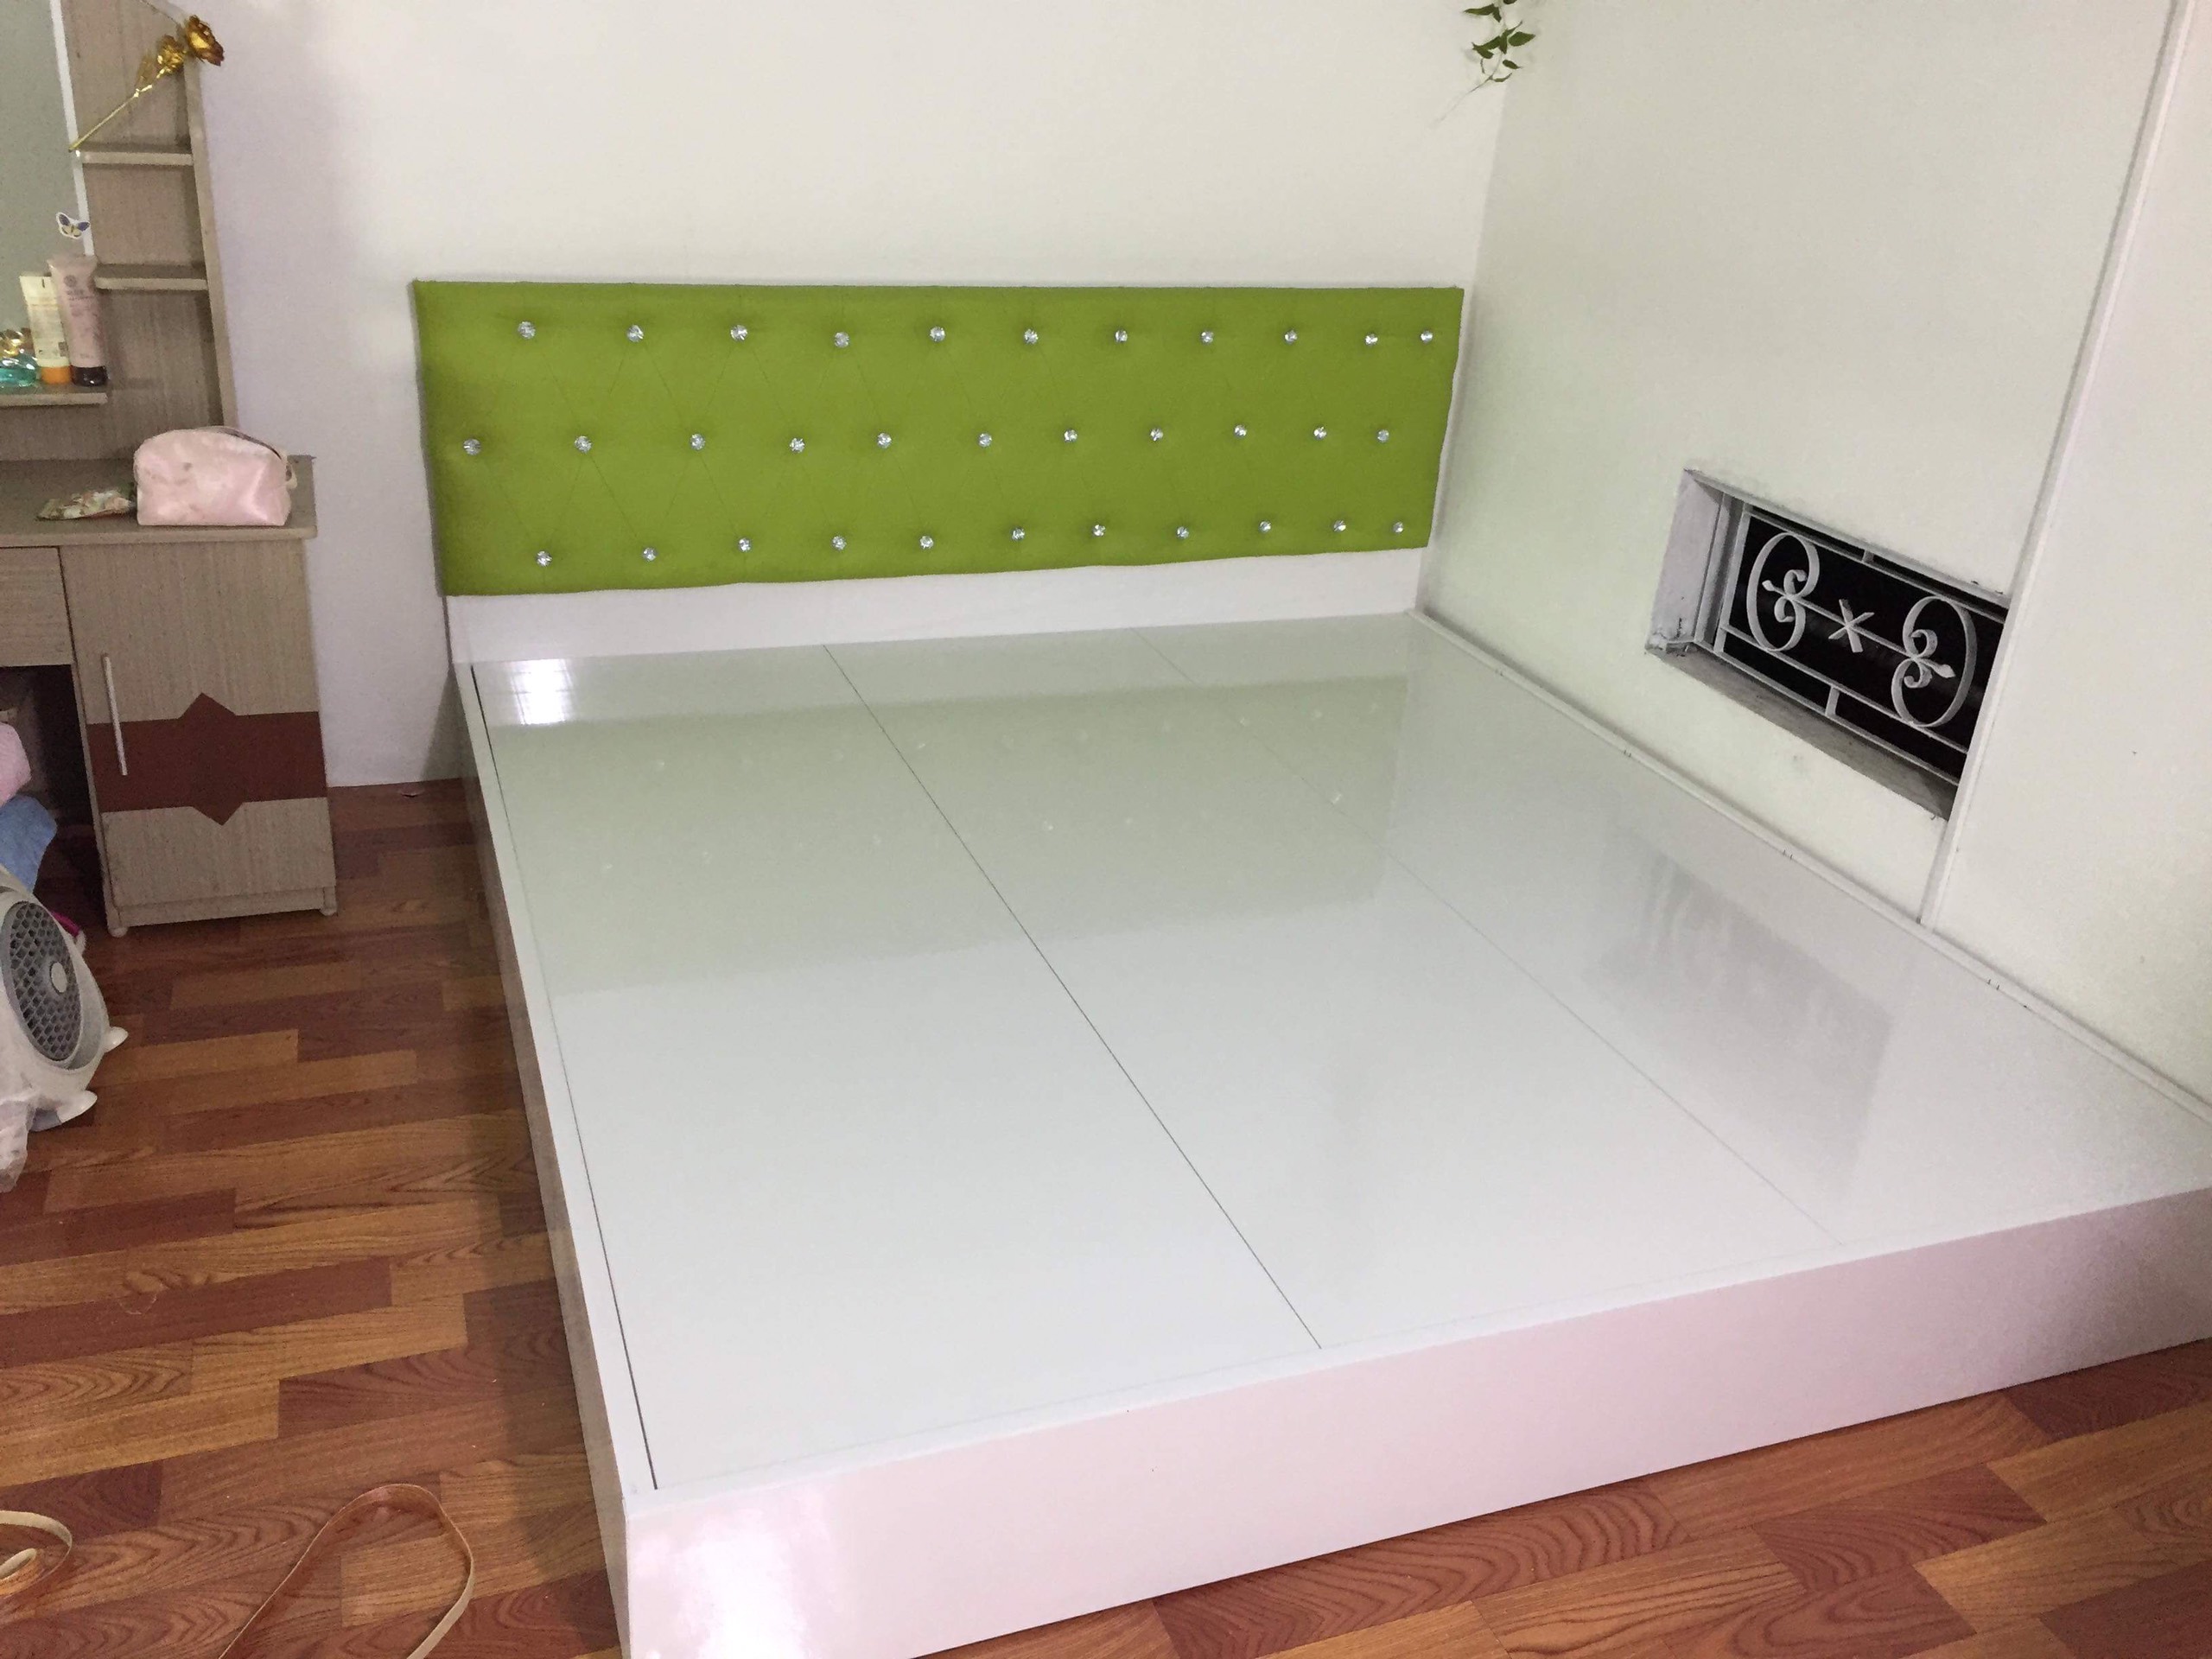 Bạn đang tìm kiếm một giải pháp nhanh chóng để trang trí cho phòng ngủ của mình? Giường nhựa Đài Loan chính là giải pháp hoàn hảo cho bạn, với thiết kế thẩm mỹ, đa dạng về kiểu dáng và giá thành hợp lý.